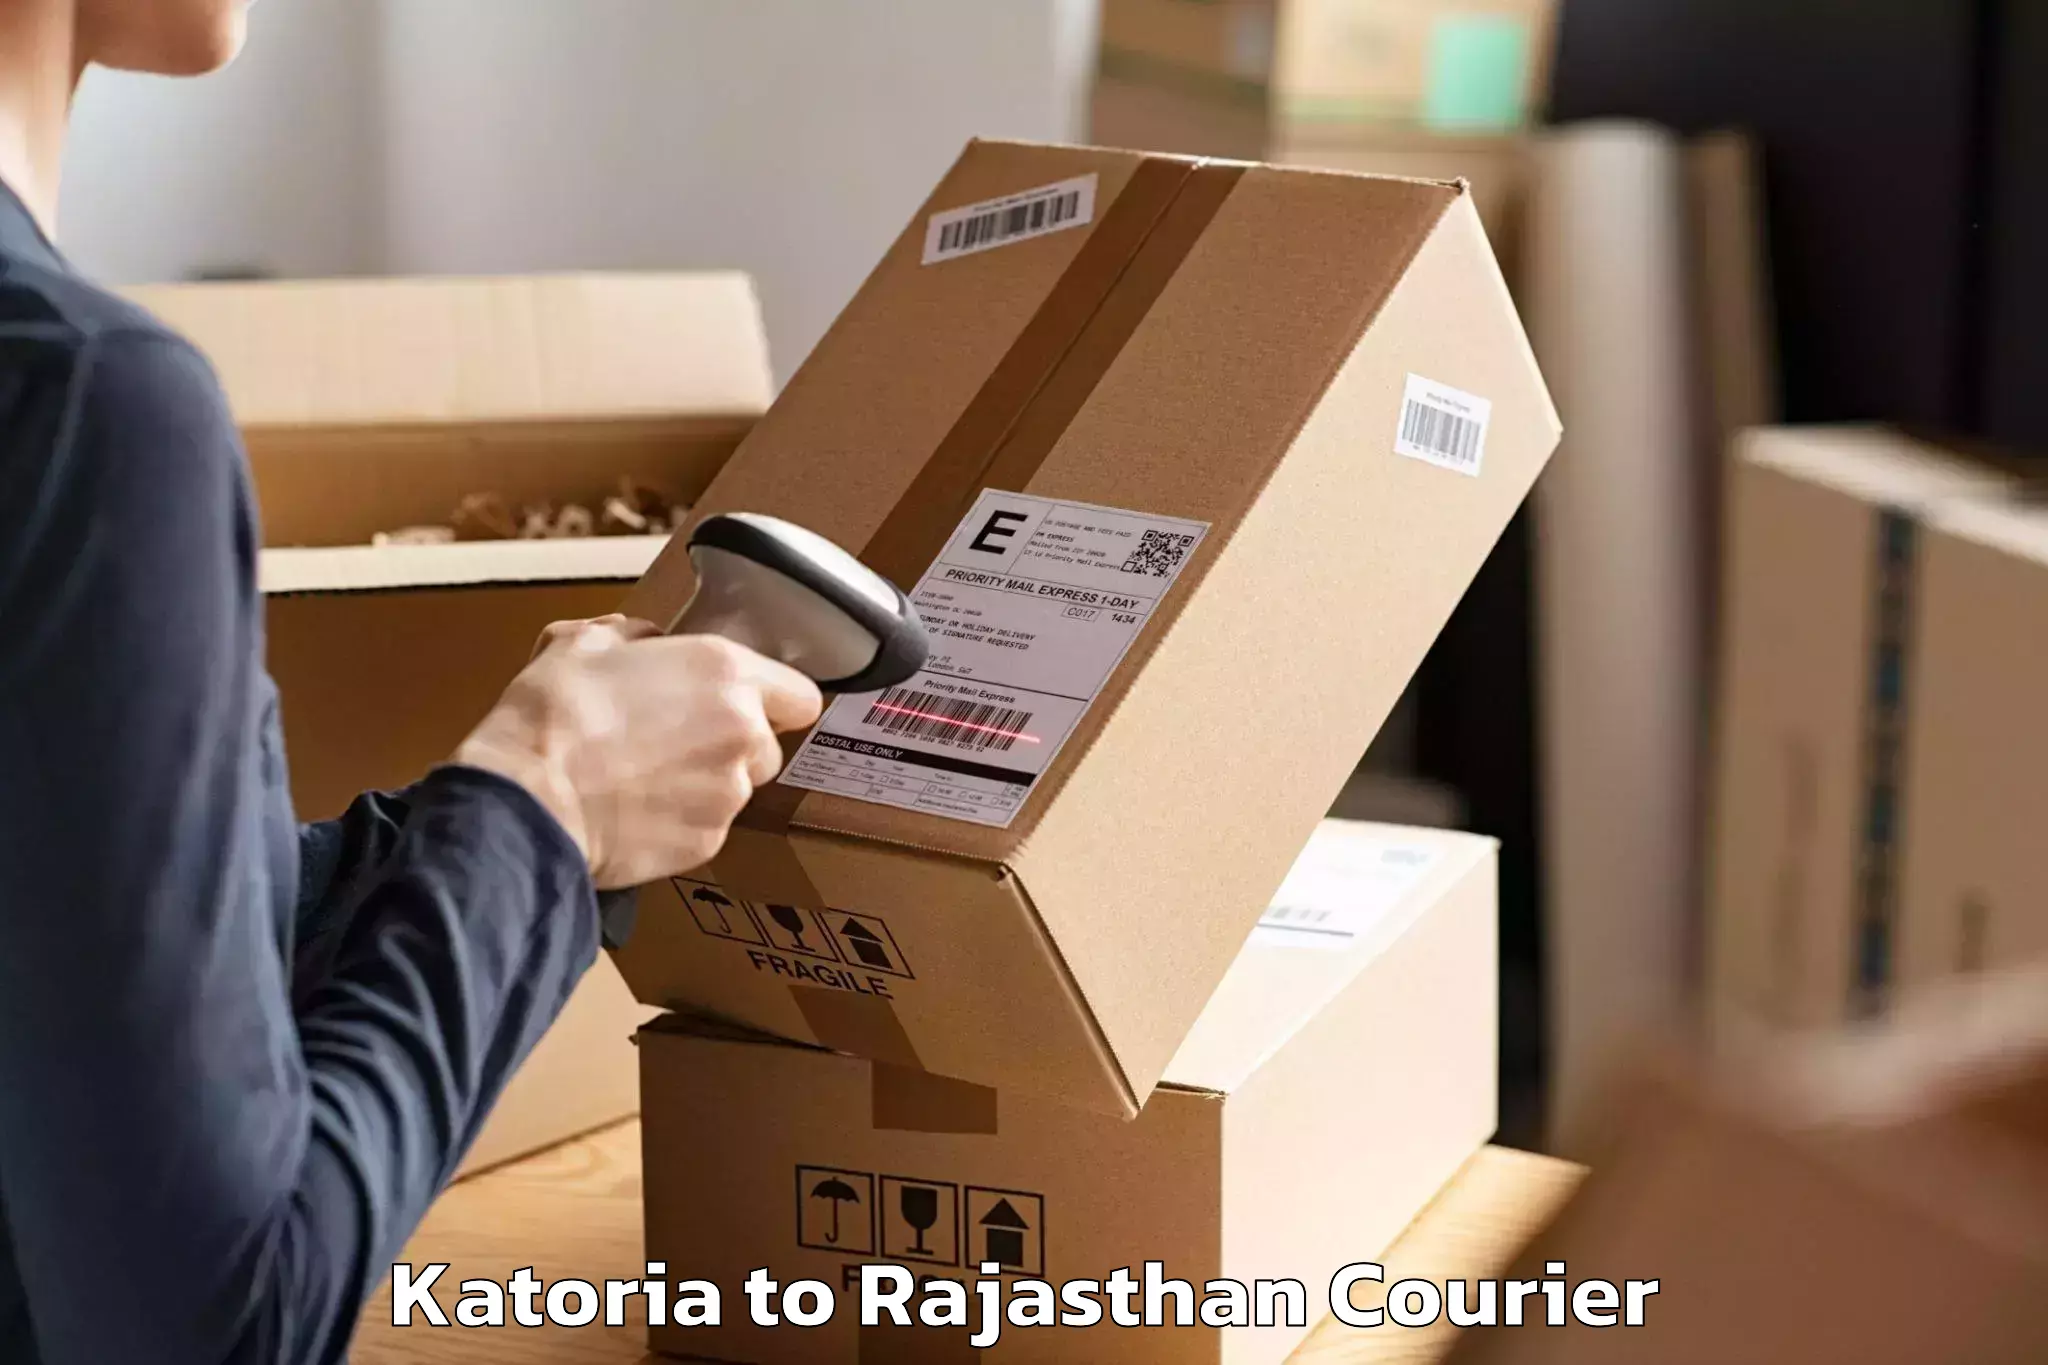 Trusted moving company Katoria to Pilani